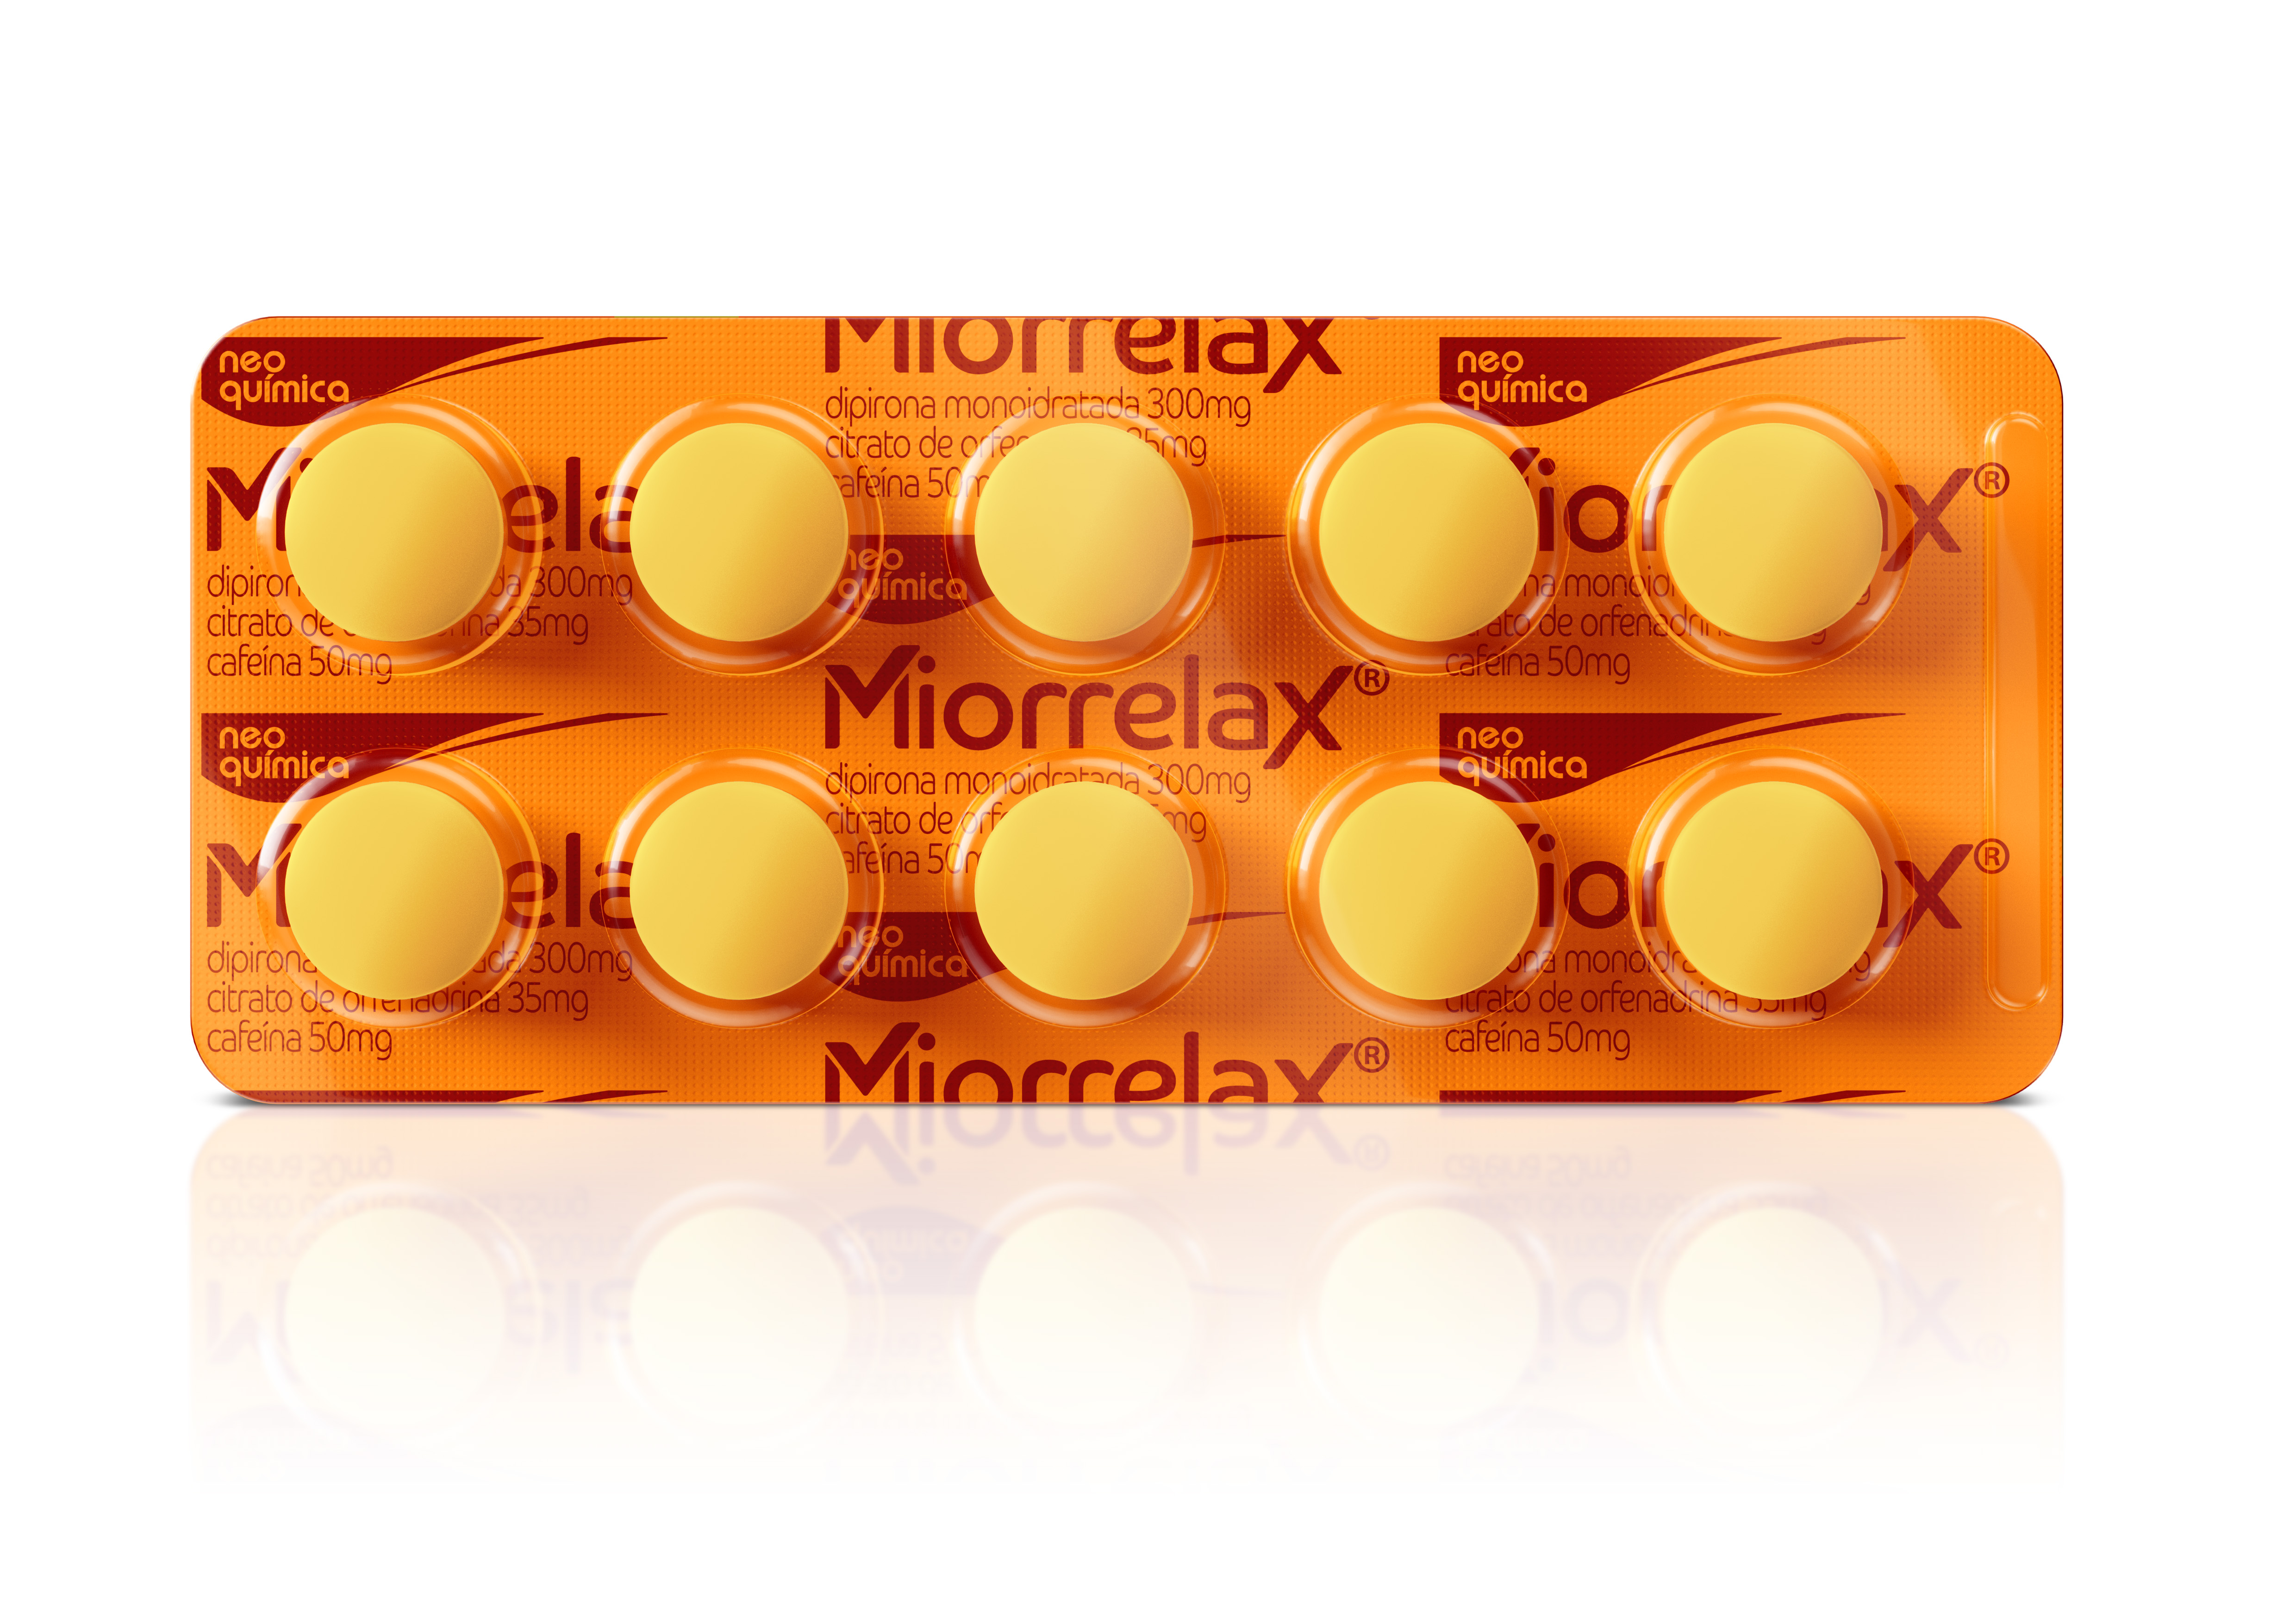 Foto da embalagem do produto Miorrelax